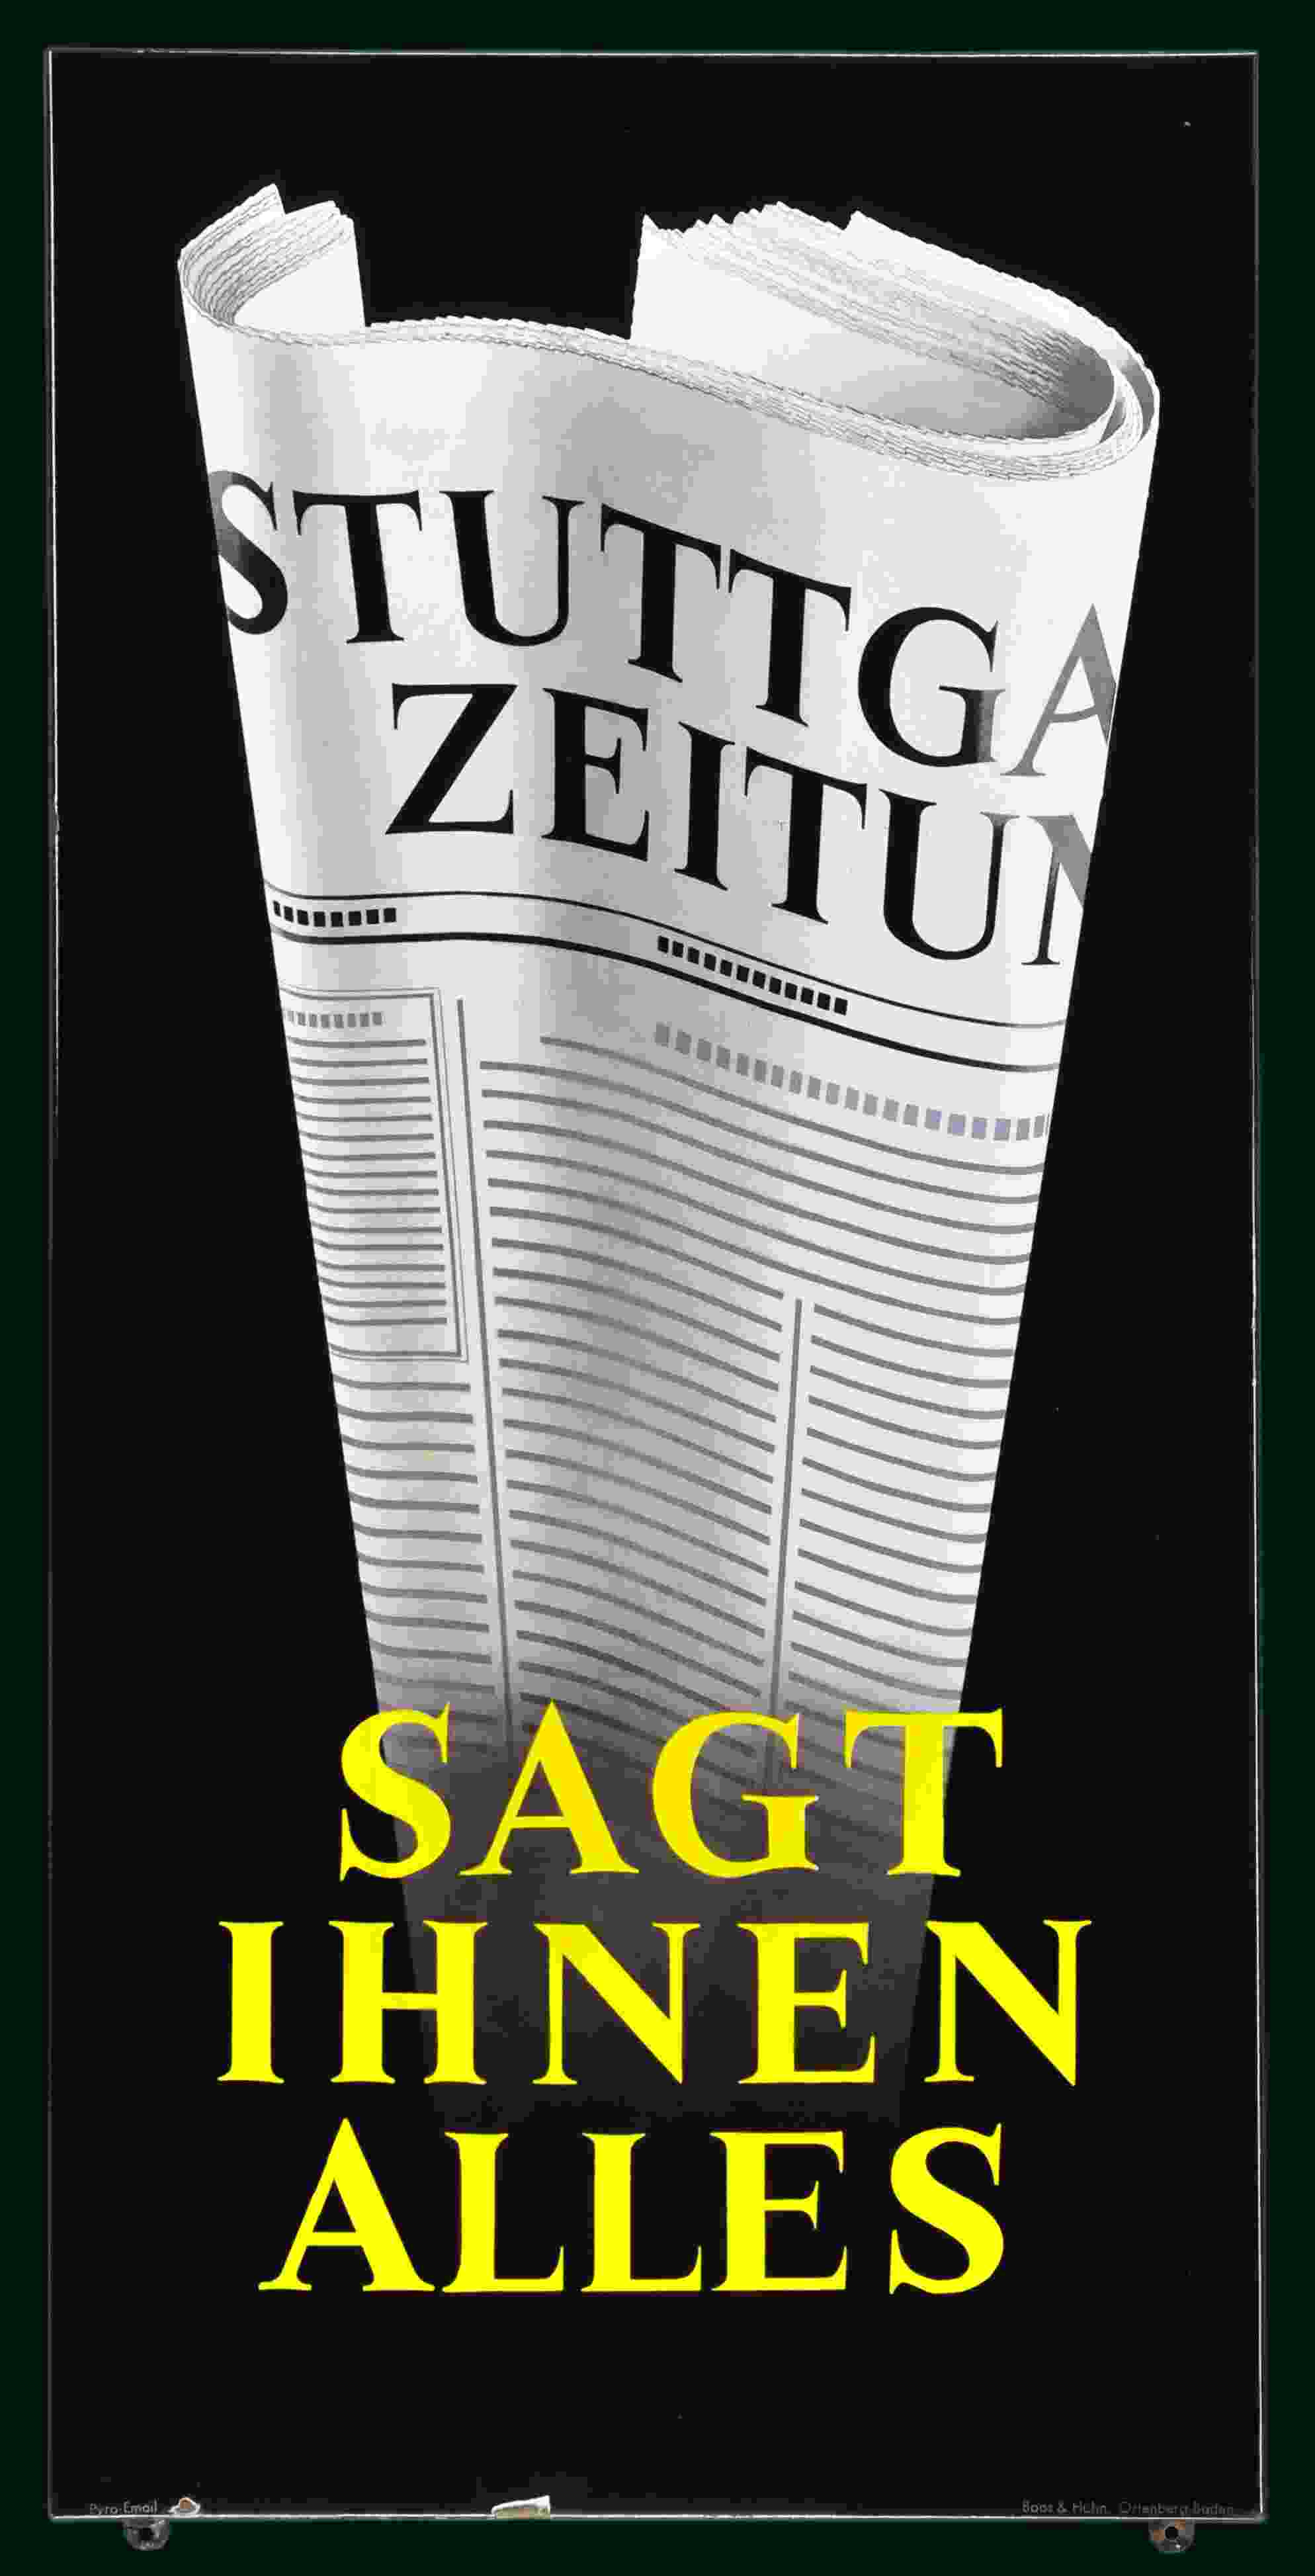 Stuttgarter Zeitung 